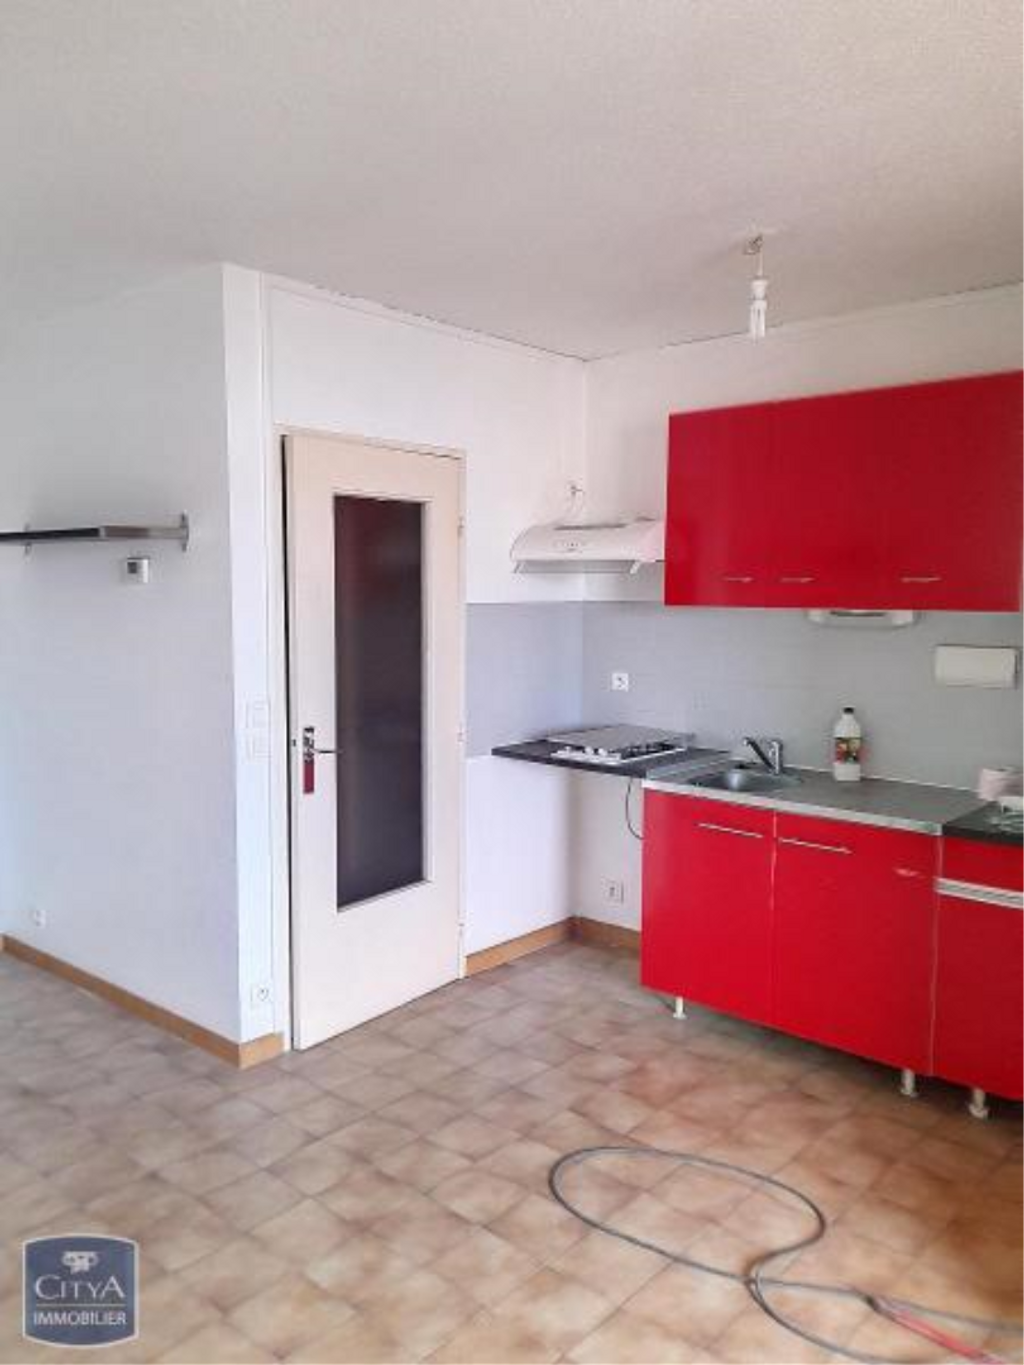 Achat appartement 2 pièces 34 m² - Perpignan